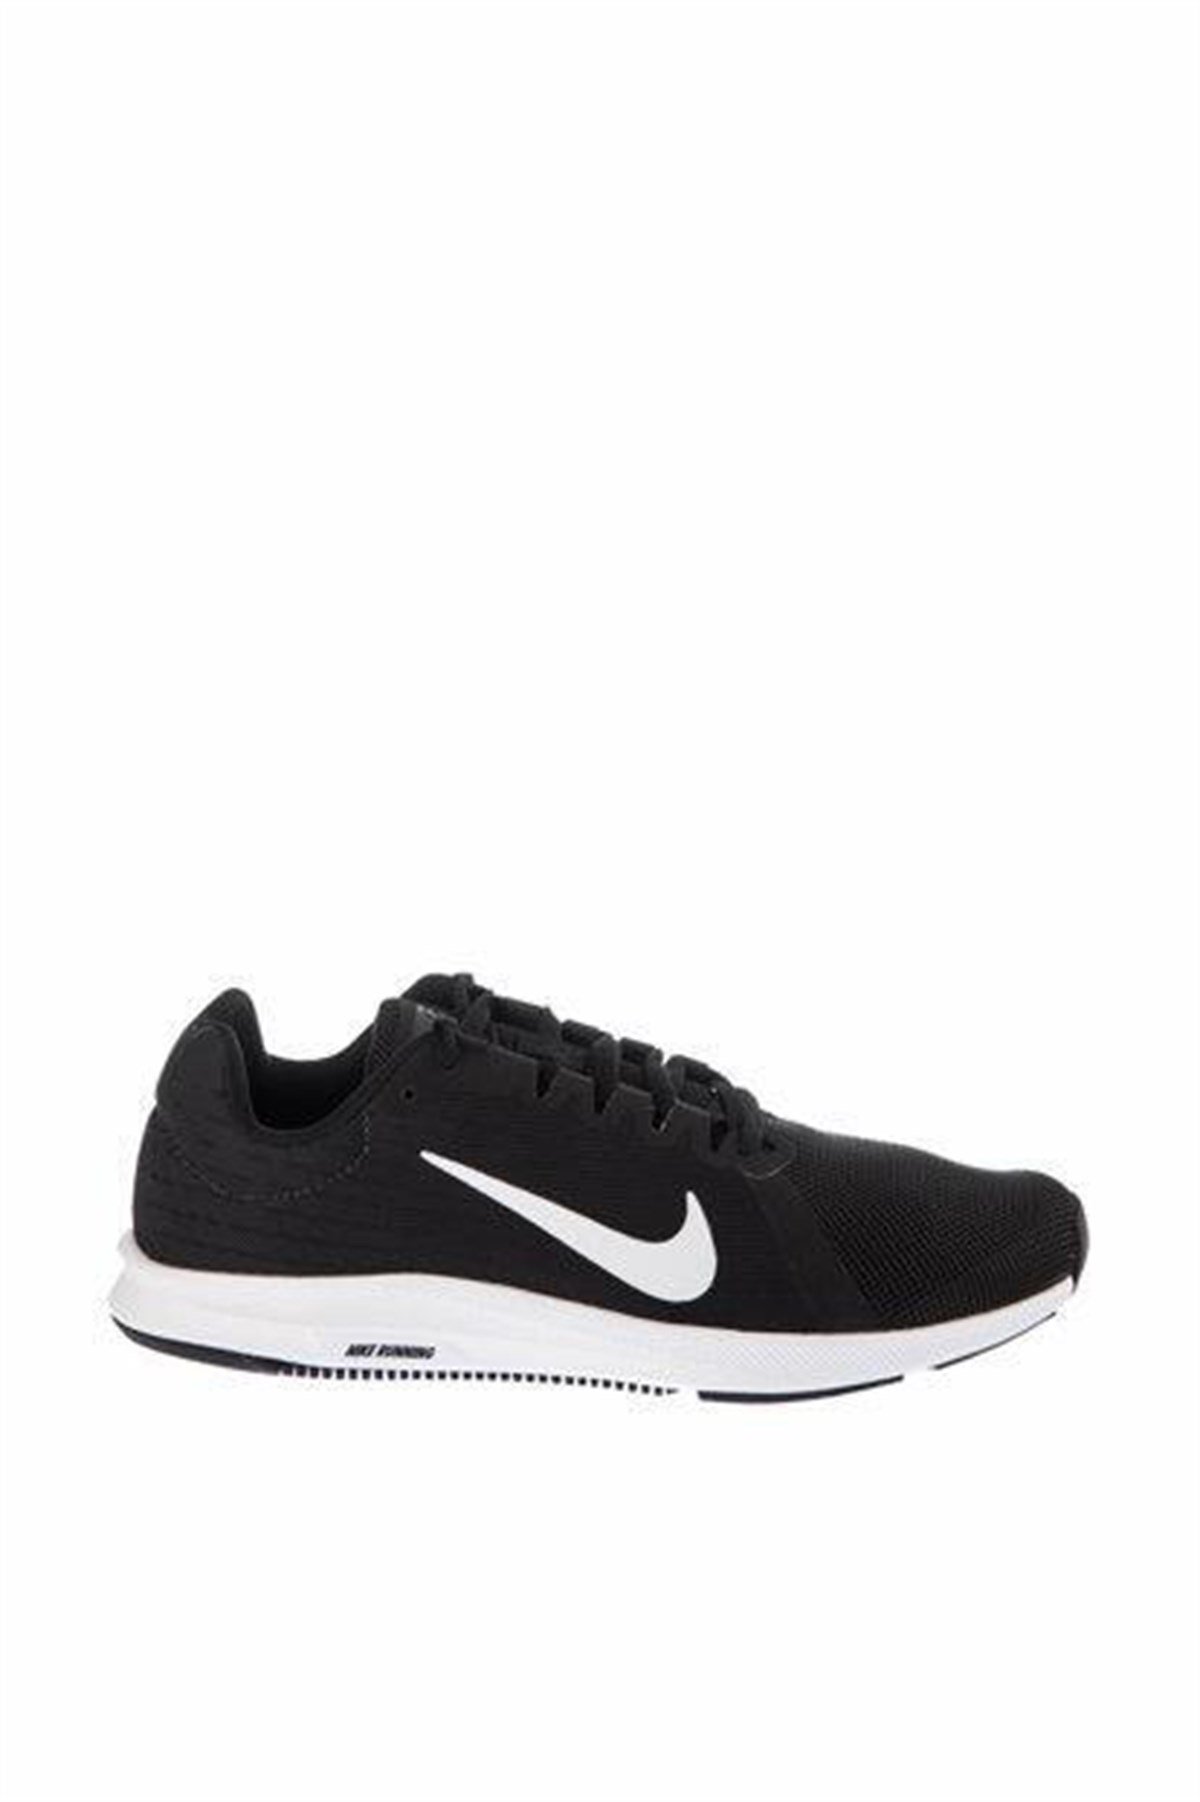 Nike Downshıfter 8 Erkek Koşu Ayakkabısı 908984-001